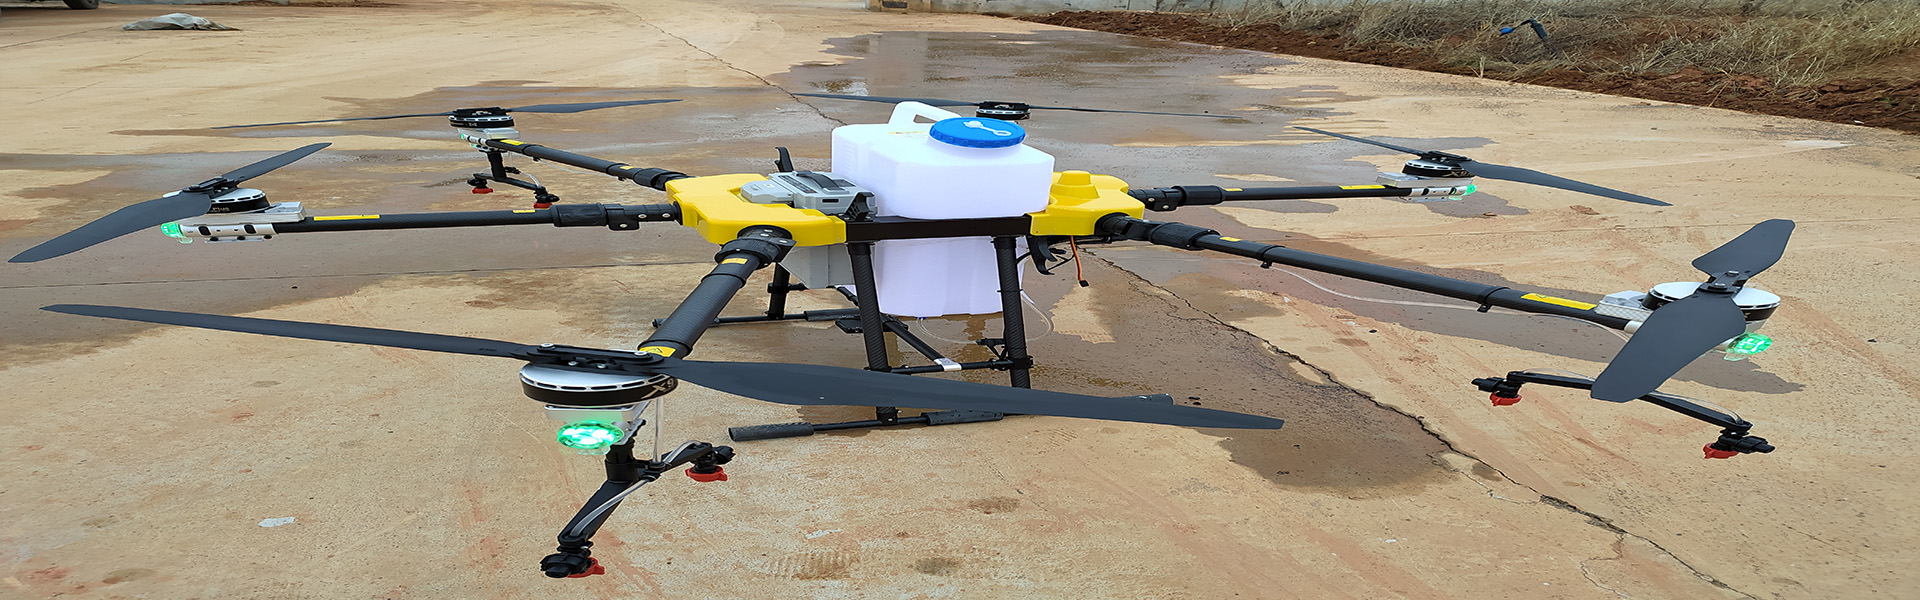 UAV agrícola, protección de plantas UAV, accesorios de UAV agrícolas,Shenzhen fnyuav technology co.LTD